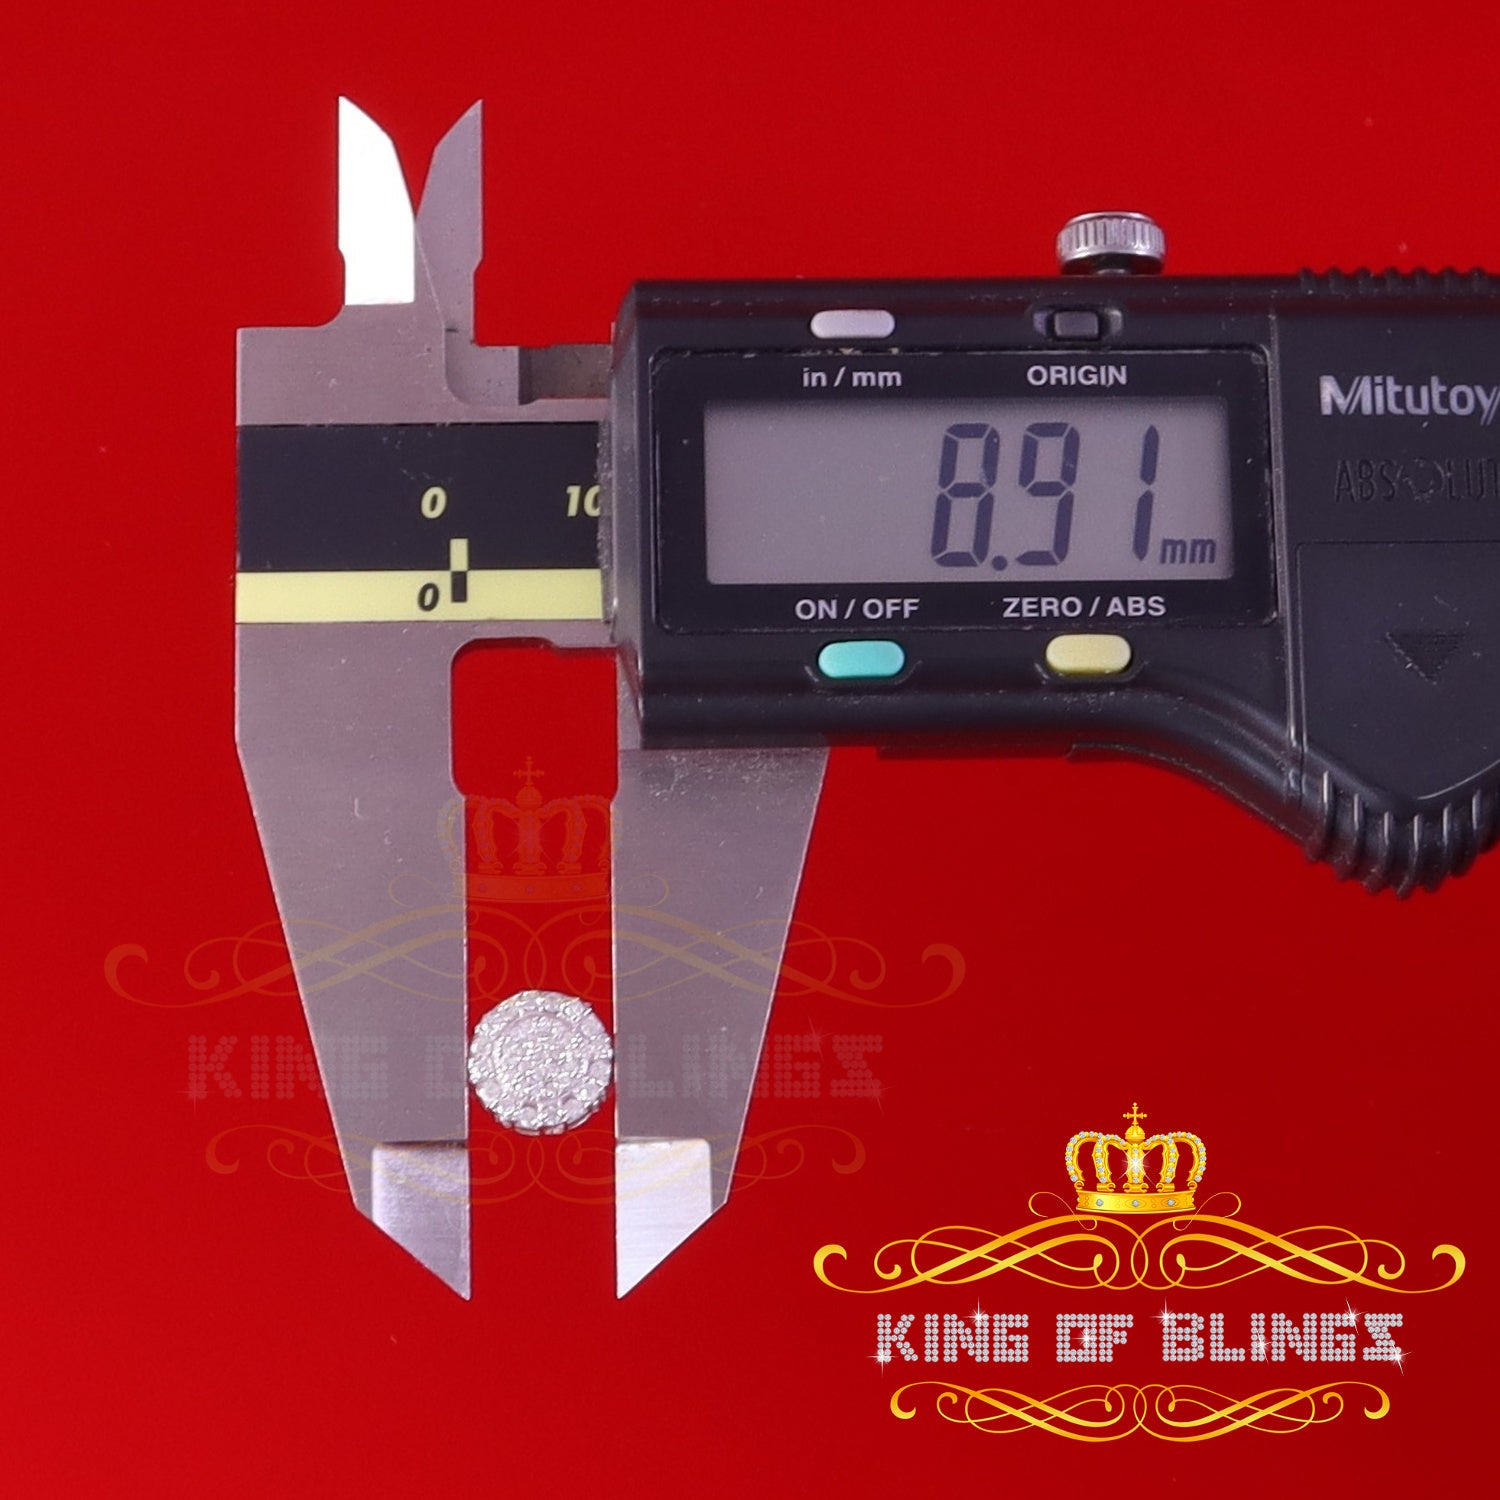 King of Bling's Men's/Womens 925 Silver 0.50ct VVS 'D' White Moissanite Round Stud Earrings KING OF BLINGS